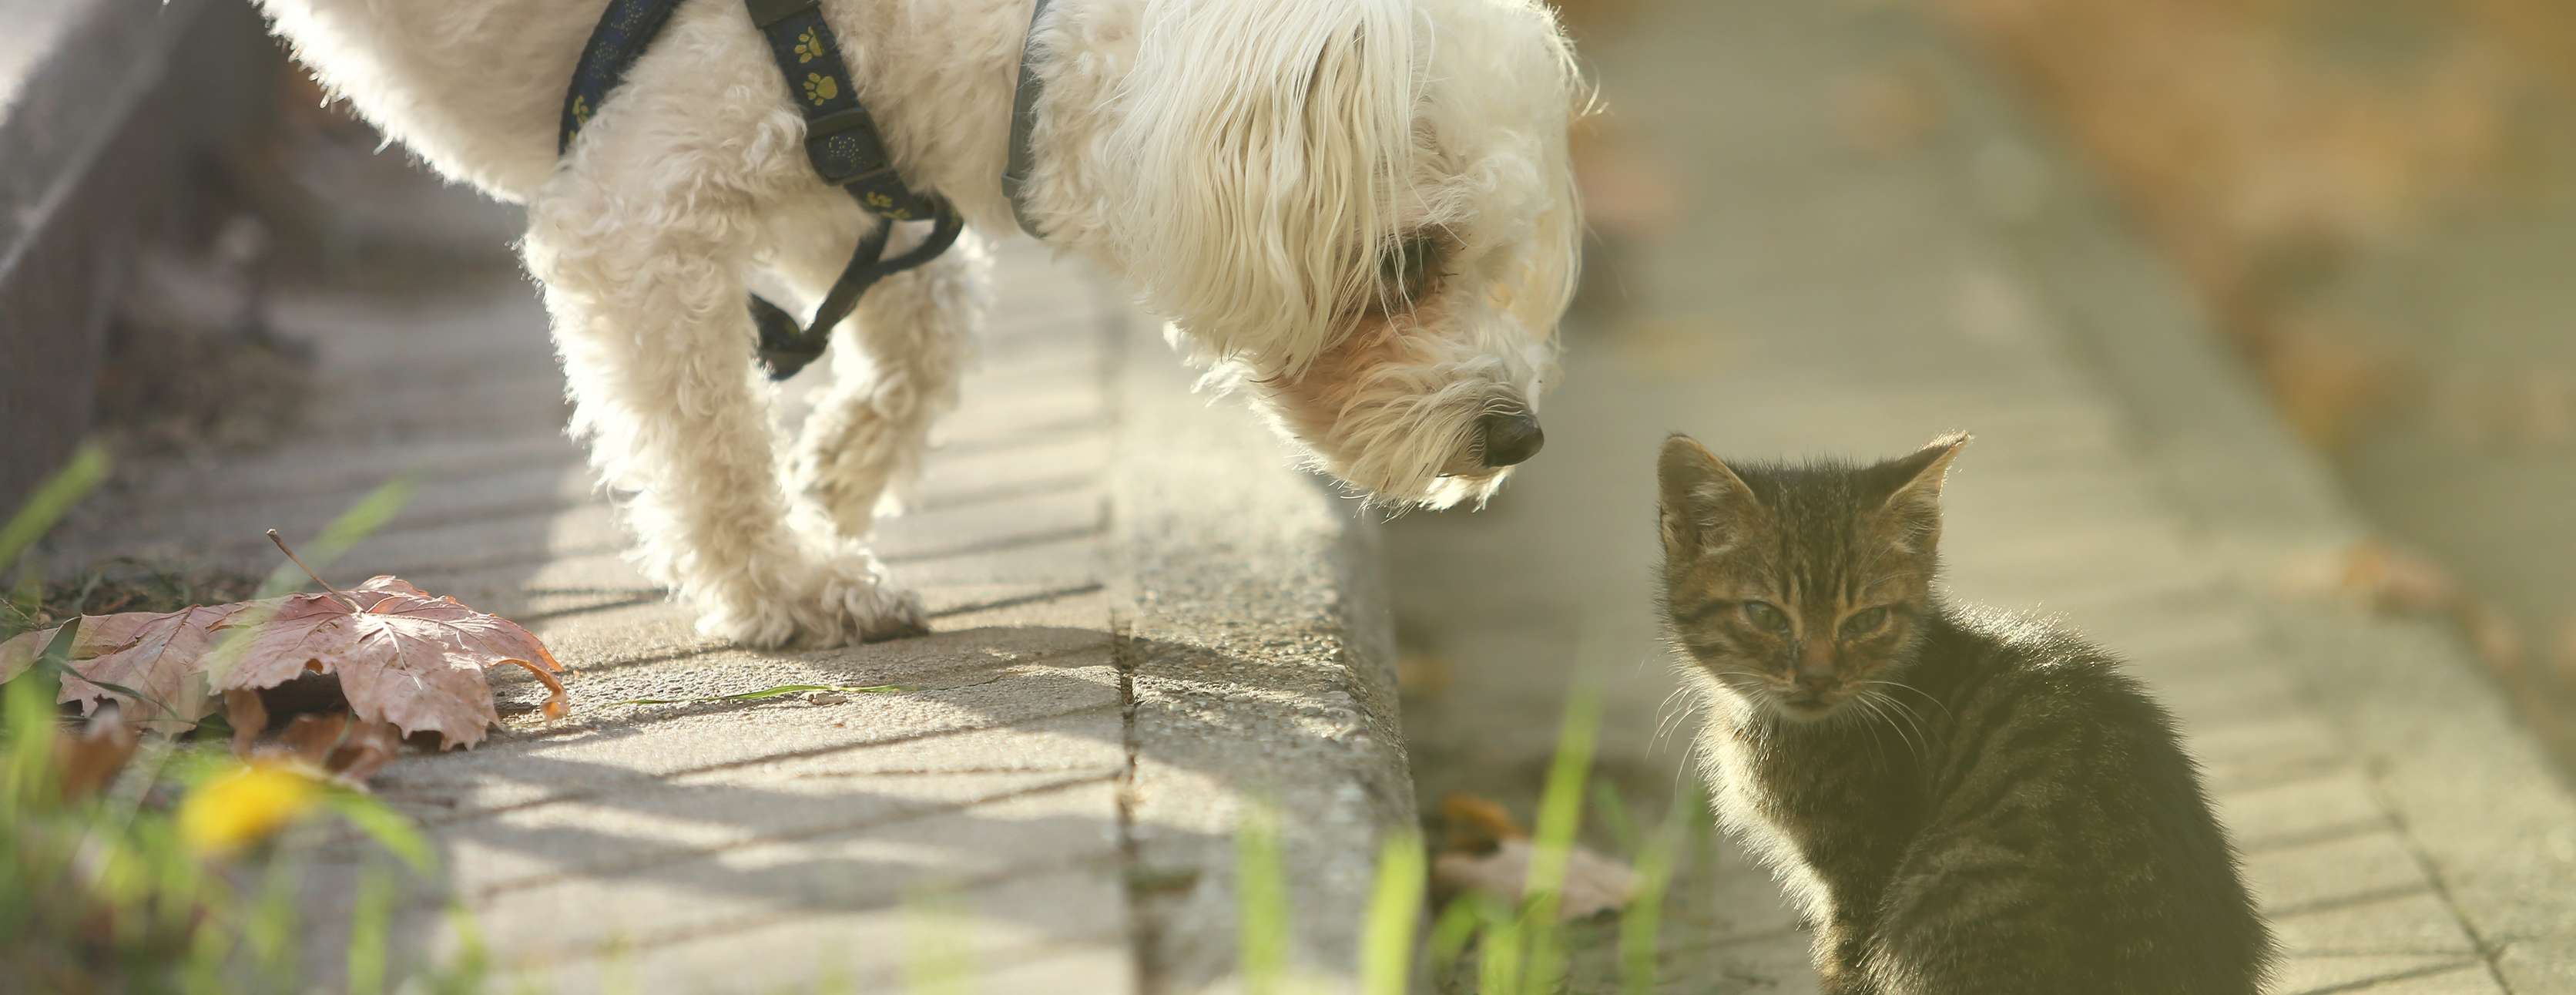 Allianz - Katzensprache: Ein kleiner Hund schnuppert an einer kleinen Katze